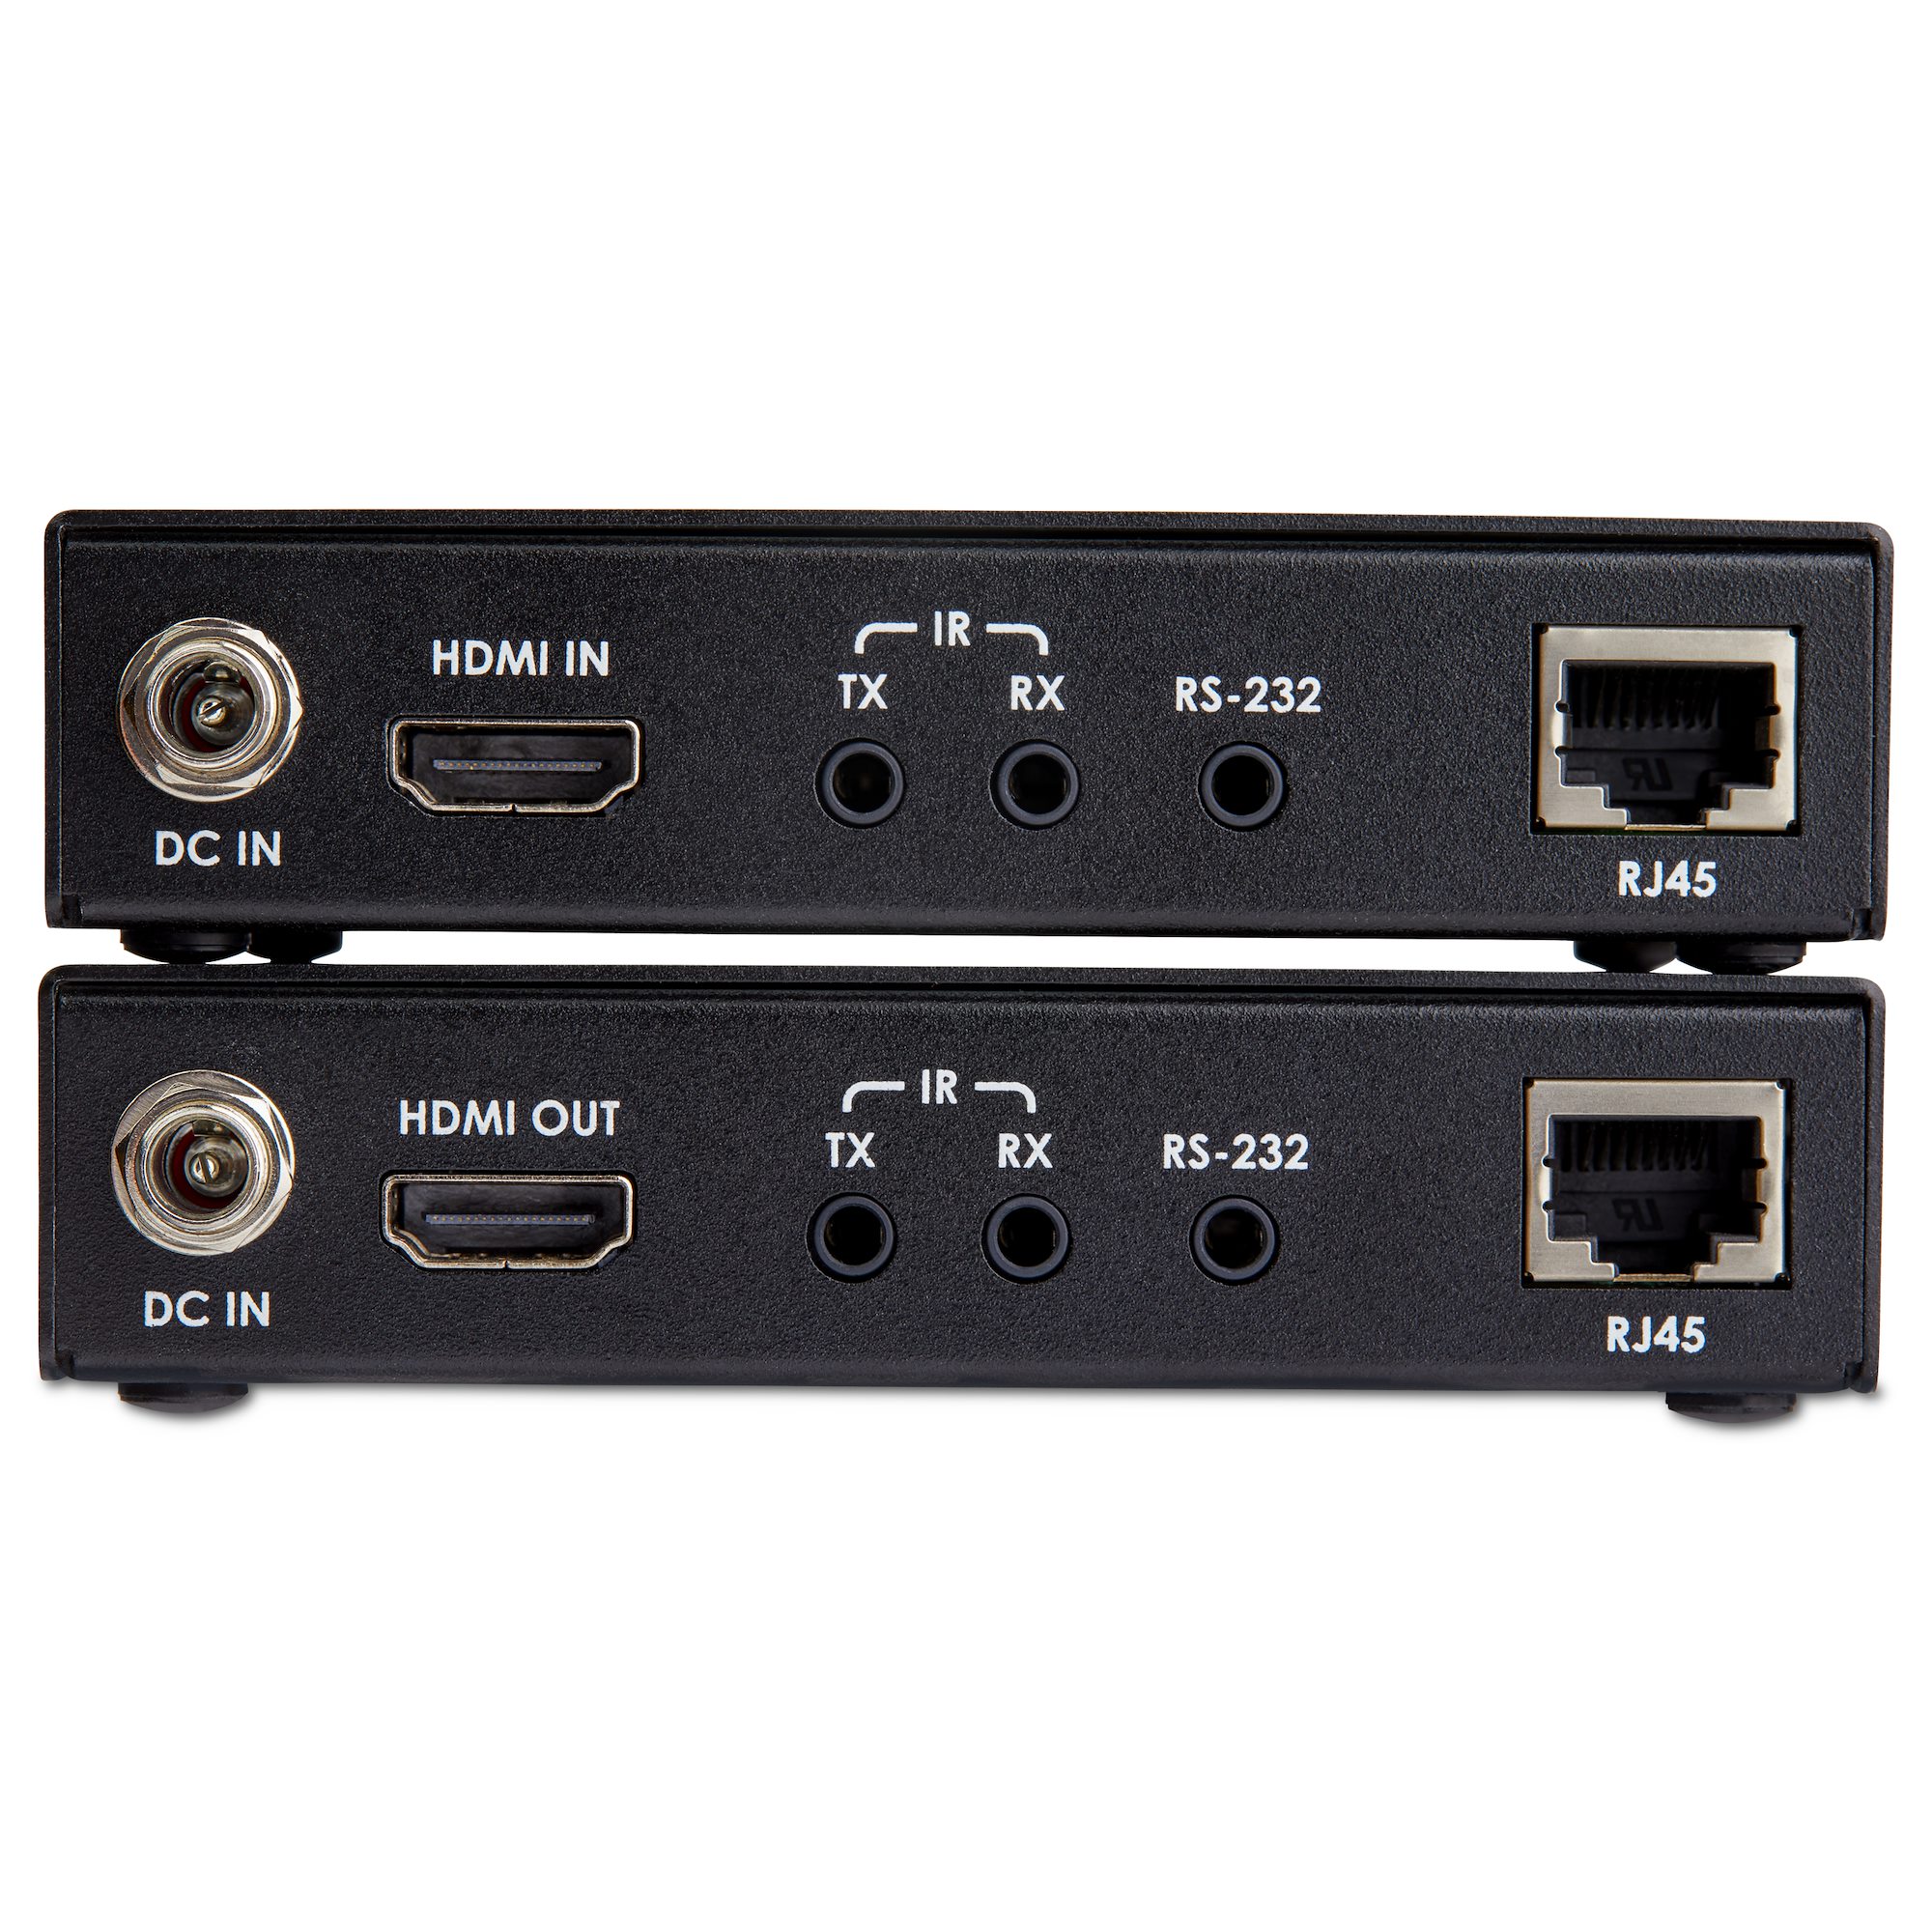 HDMI LANエクステンダー/カテゴリ6ケーブル使用/PoE給電/最大100mまで延長 ST121HDBT20L｜分配器、切替器 